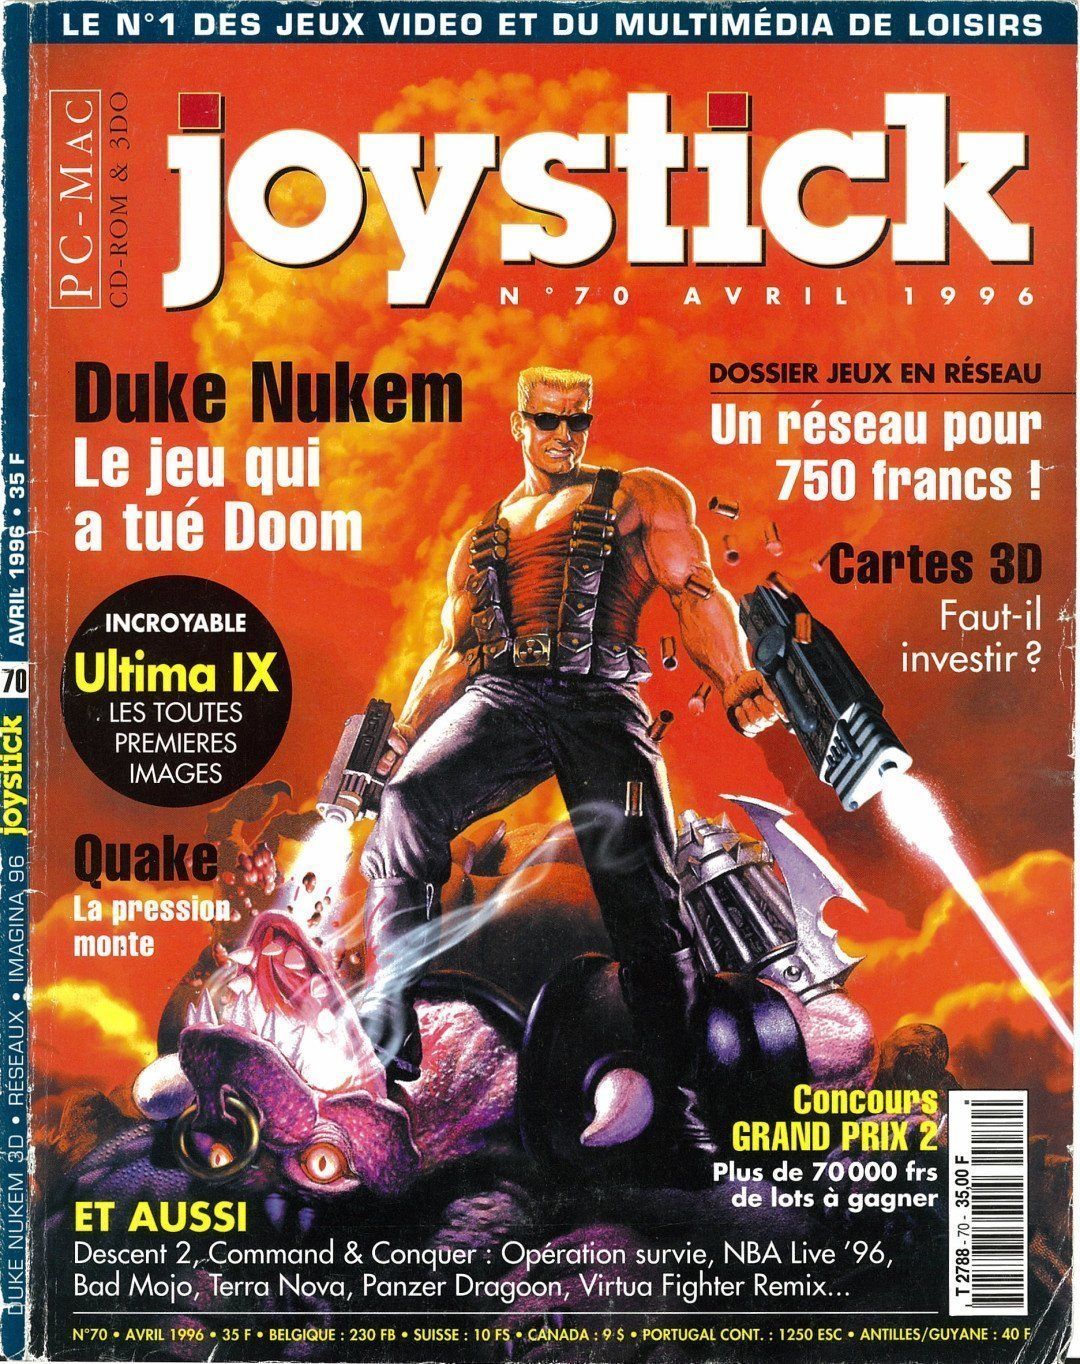 Joystick d'avril 1996 avec en couverture Duke Nukem